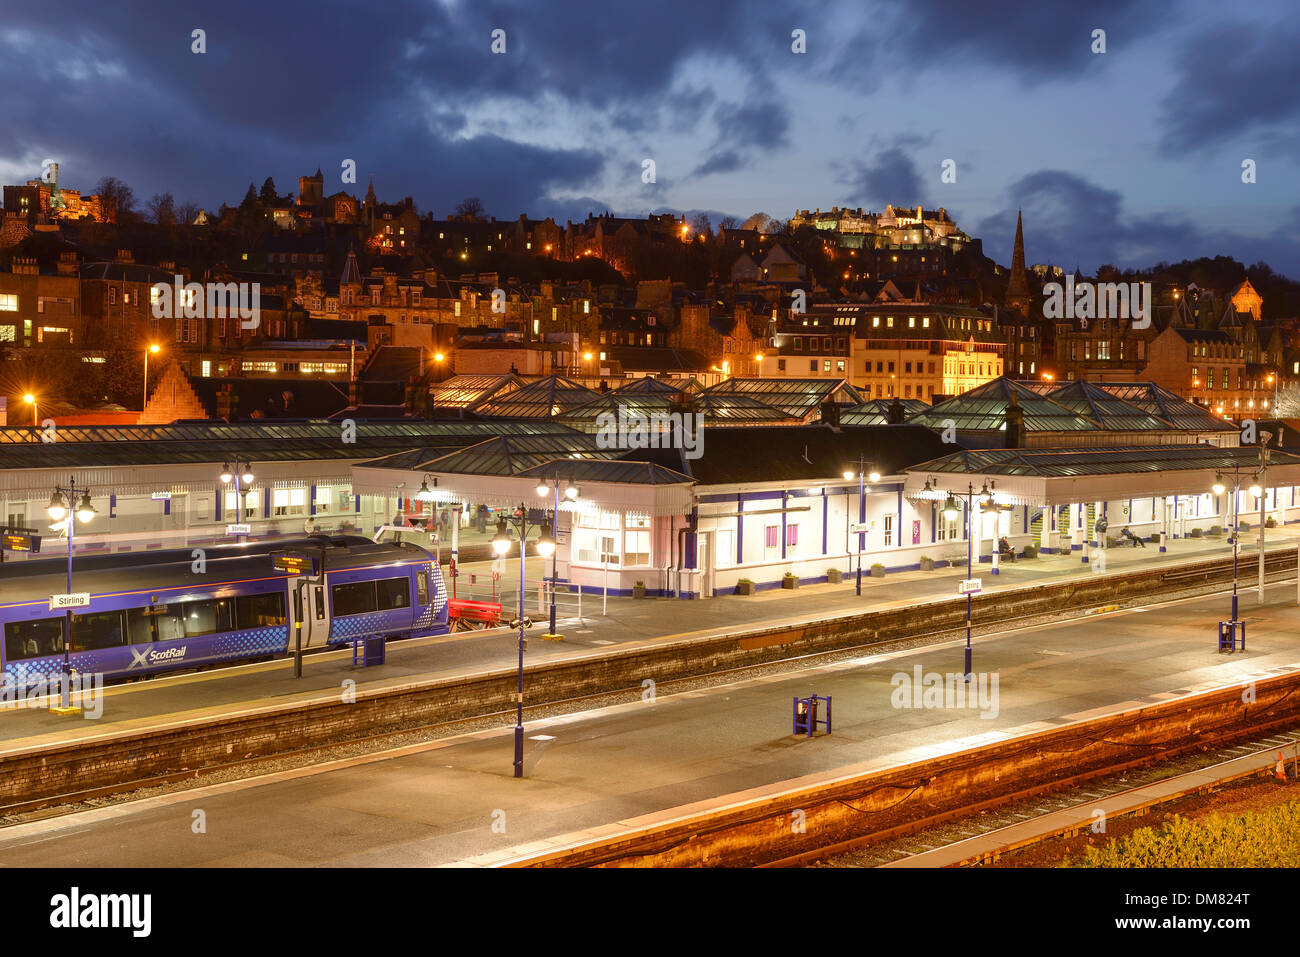 La estación de trenes en la ciudad de Stirling con el castillo y la ciudad en el fondo Foto de stock